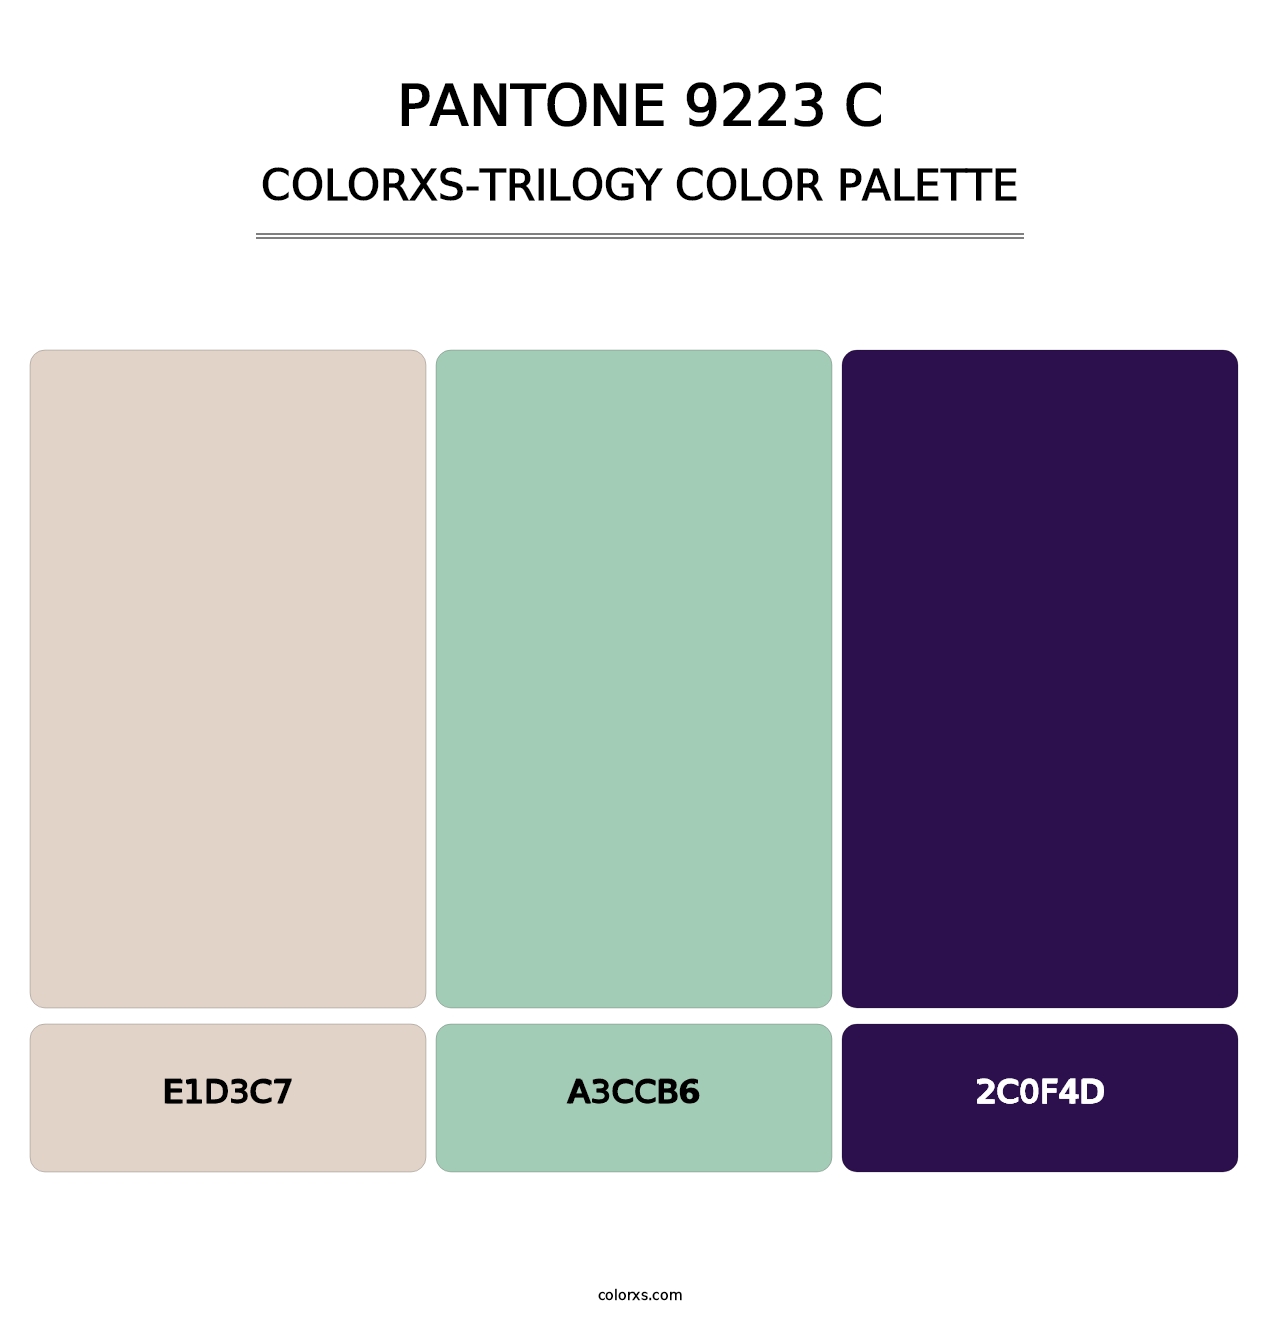 PANTONE 9223 C - Colorxs Trilogy Palette